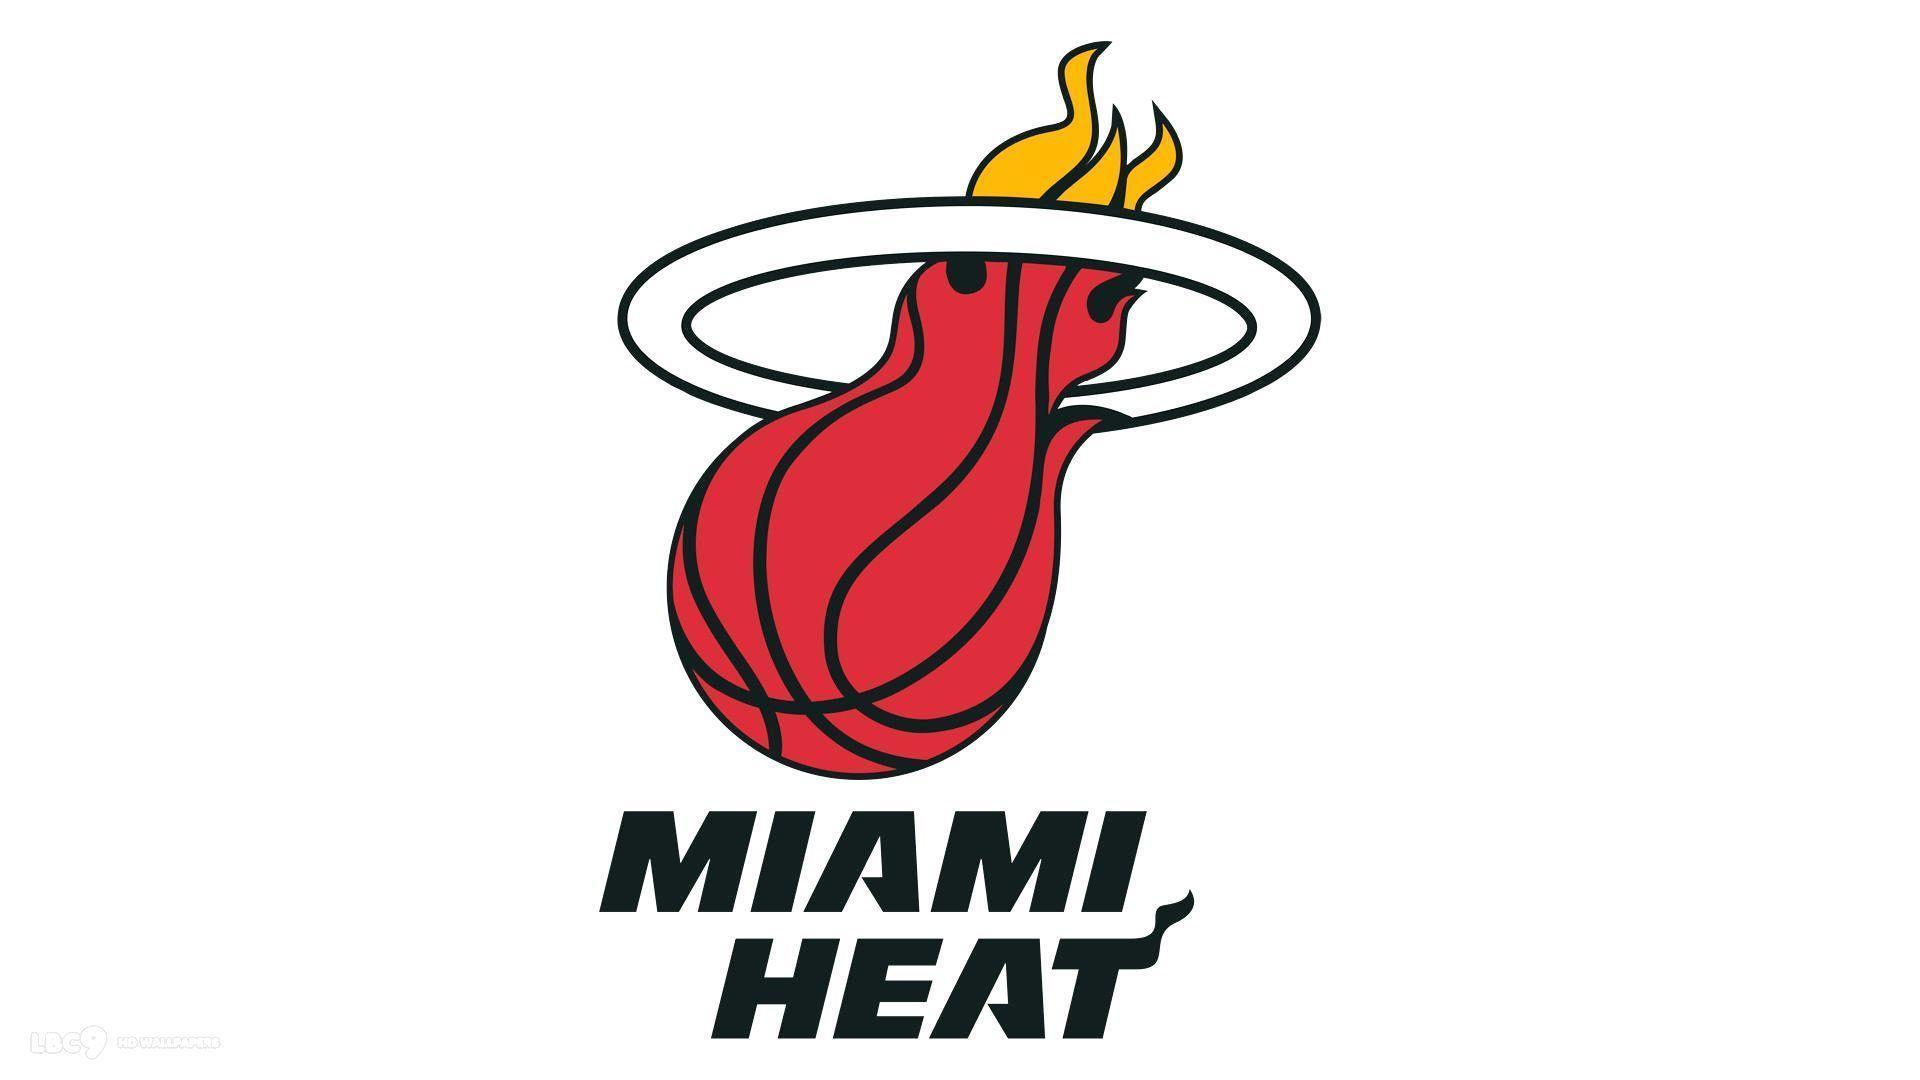 Miami Heat HD Wallpaper 2015